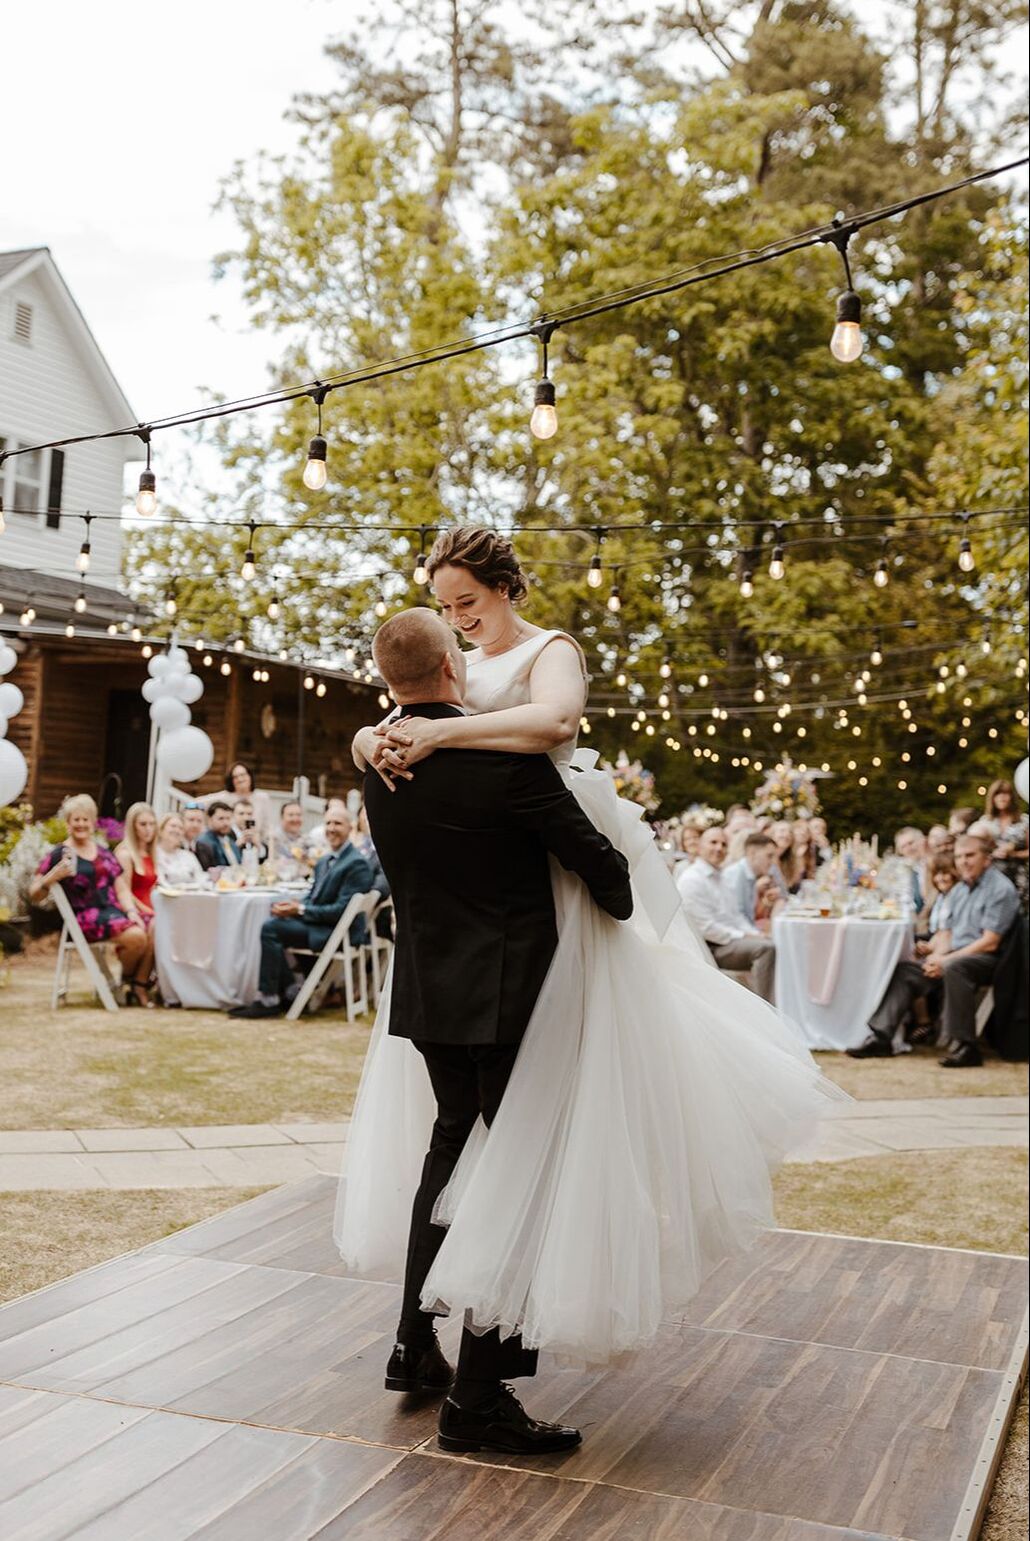 bride and groom doing waltz on outdoor dance floor